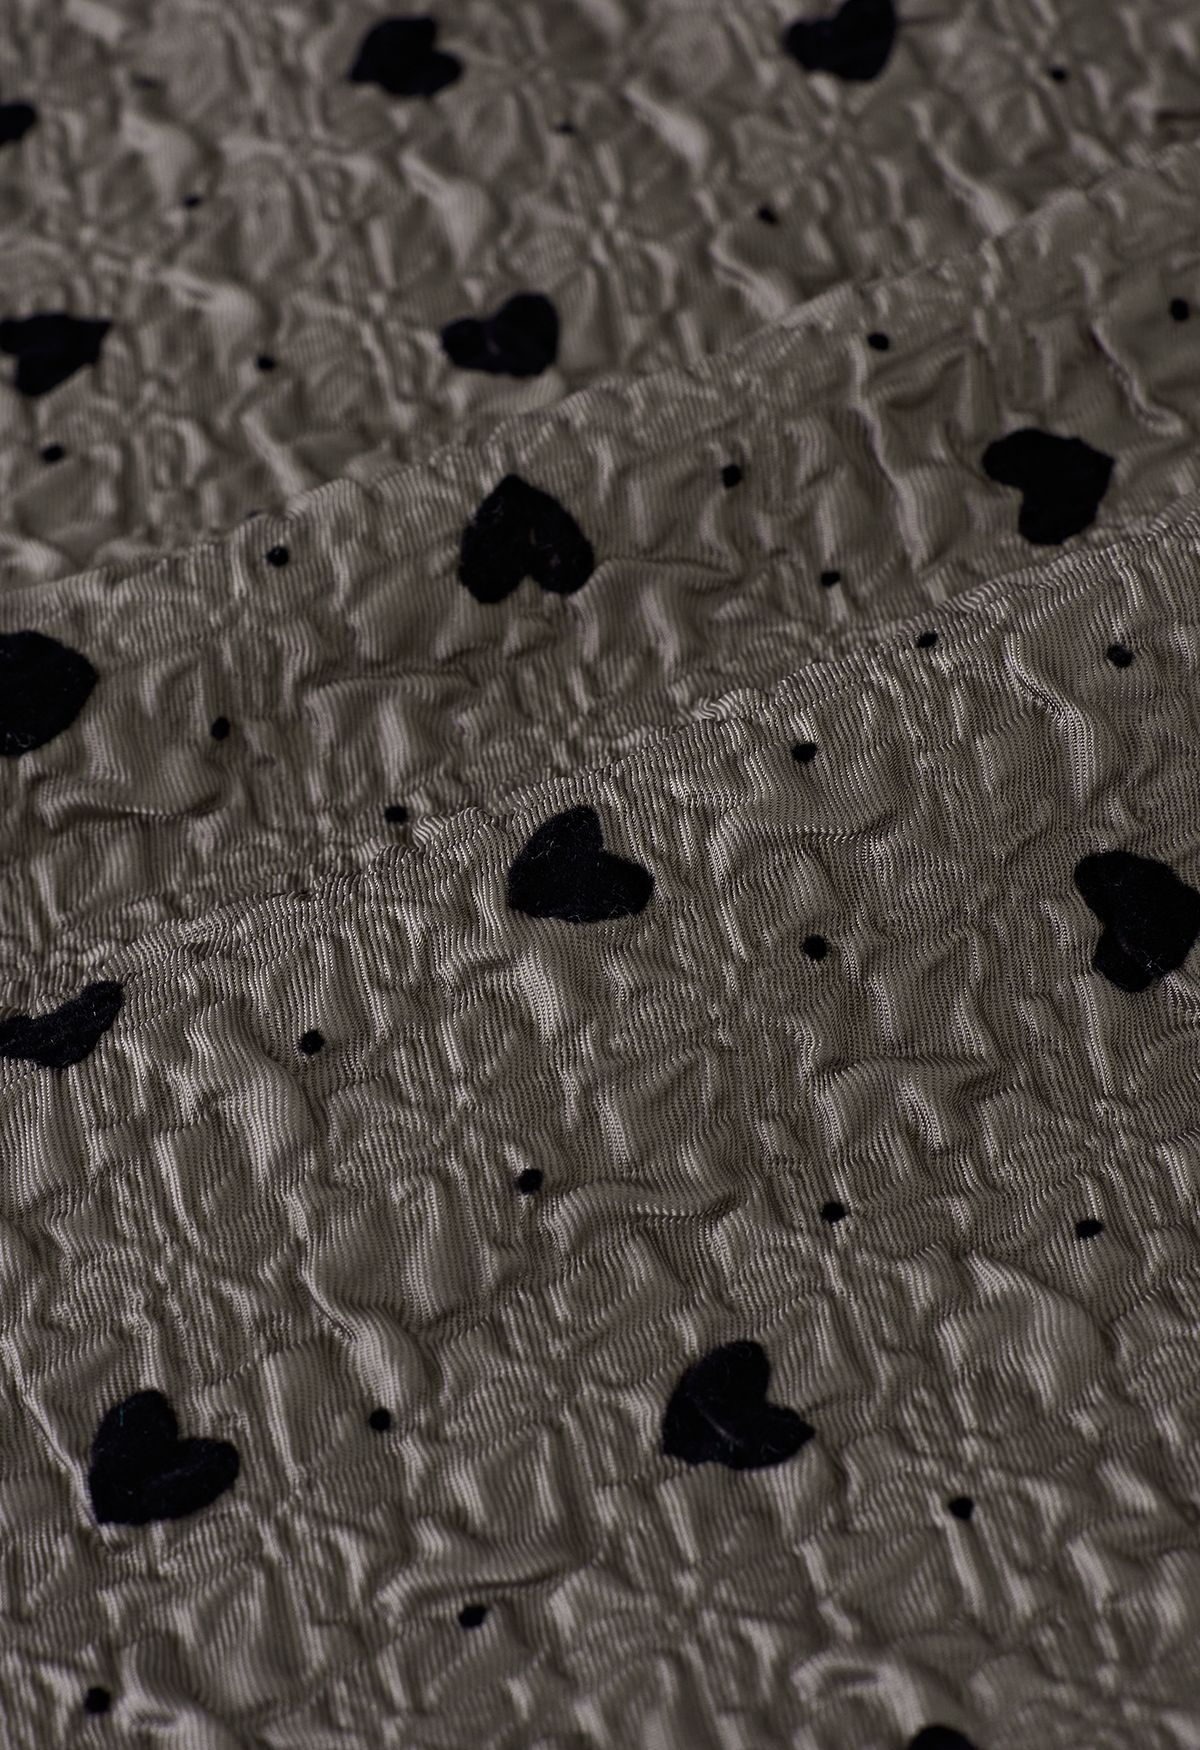 Velvet Heart Embossed Texture Midi Skirt in Taupe